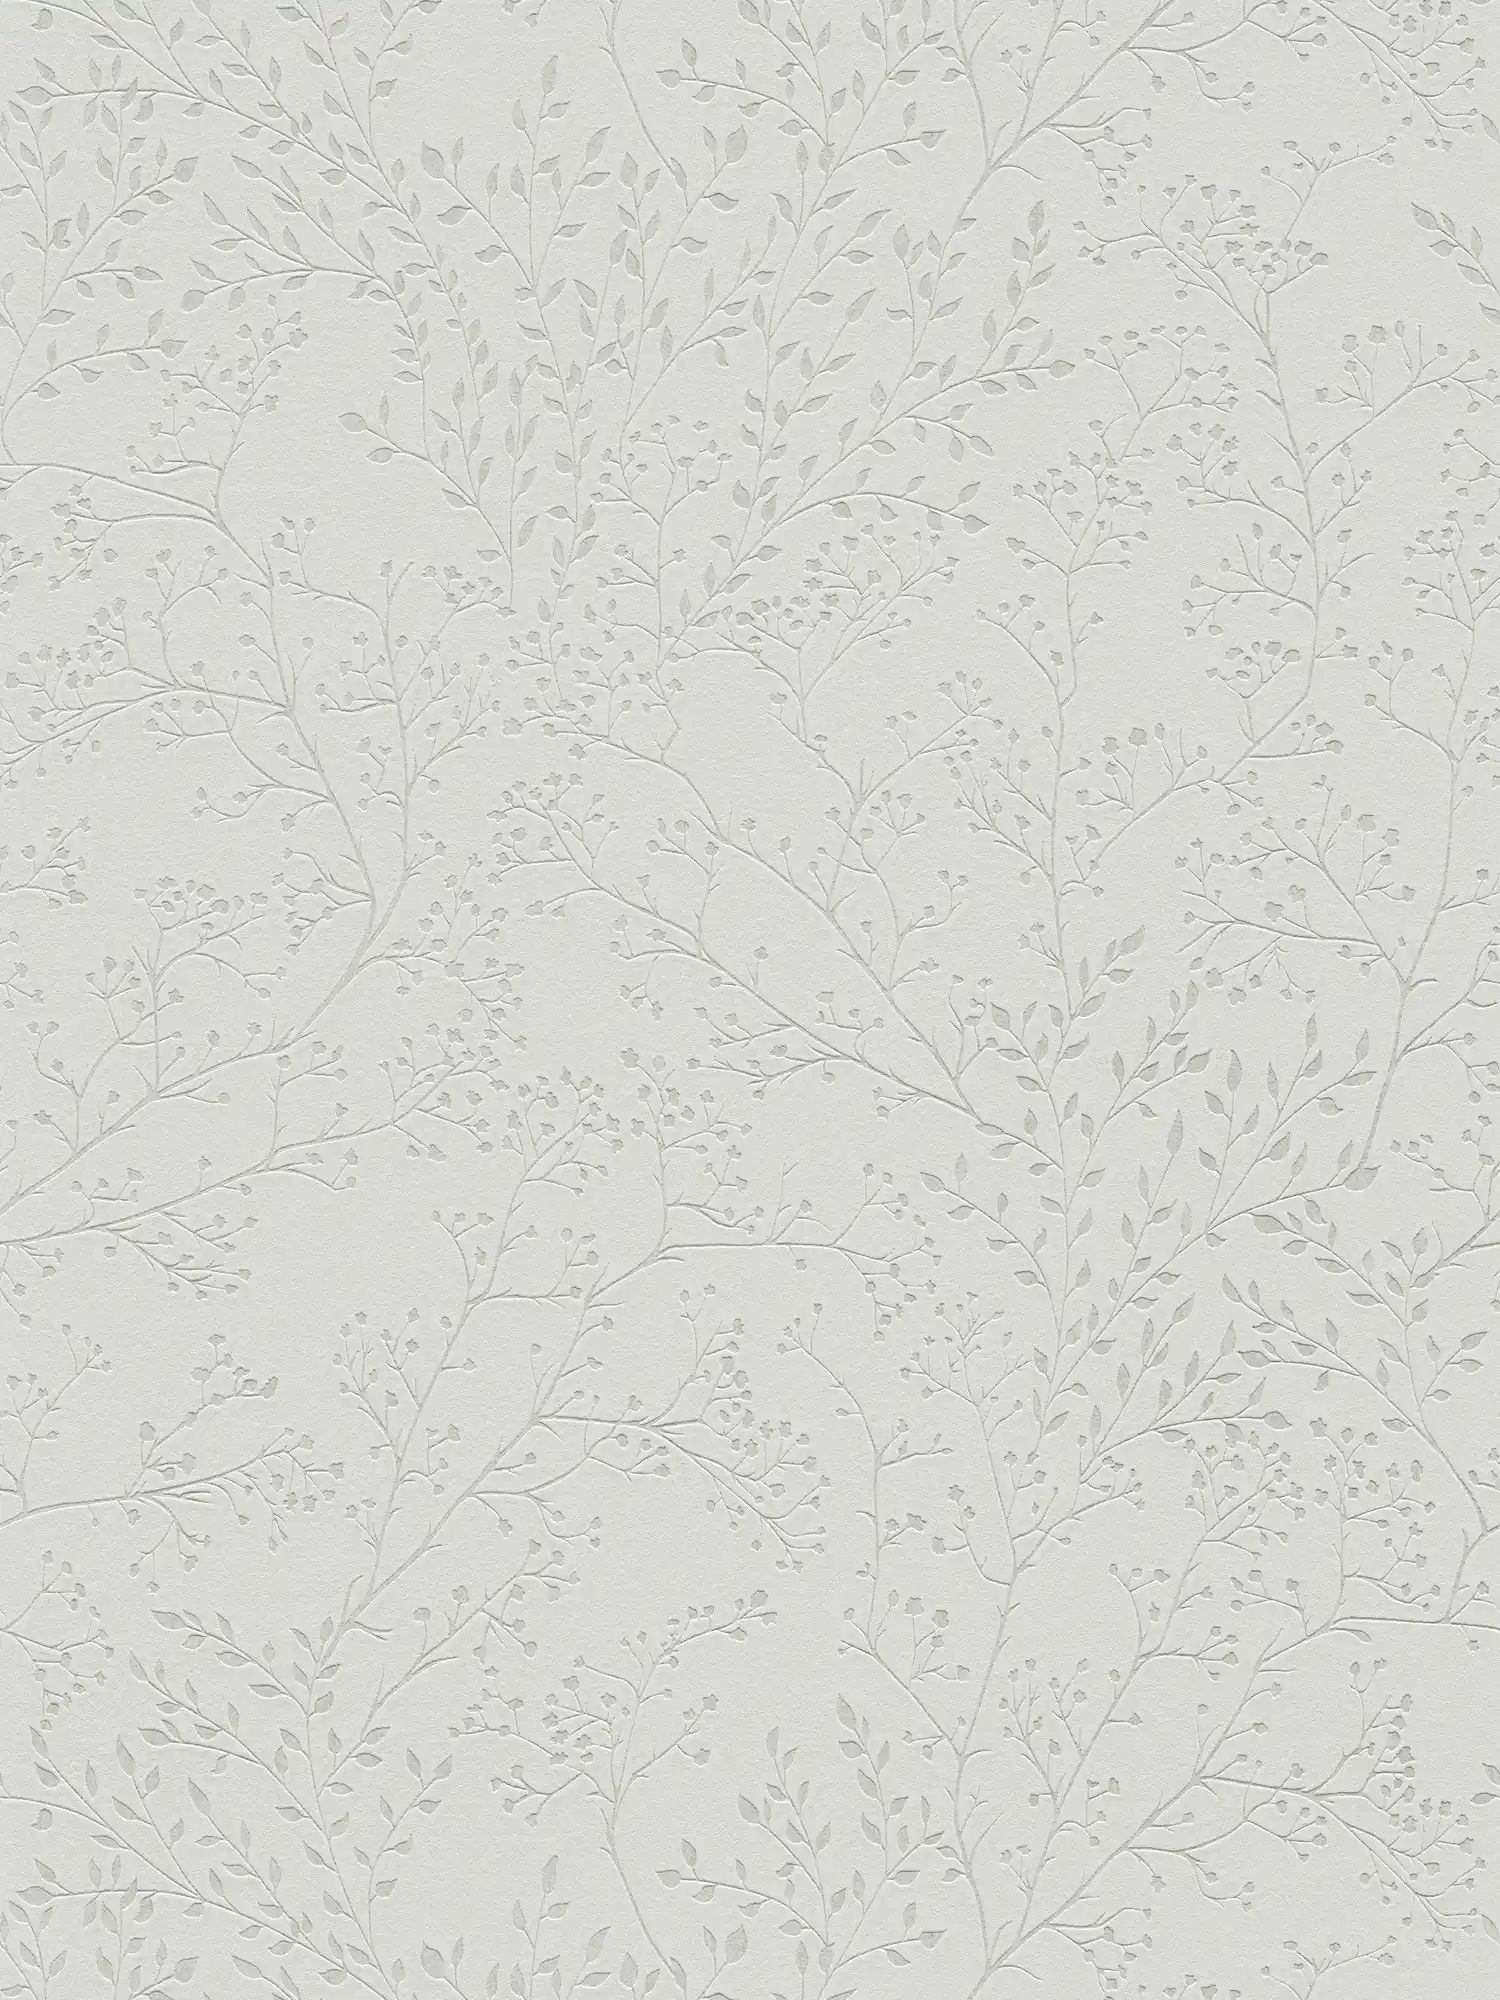 Effen grijs behang met bladmotief, glans & textuureffect
